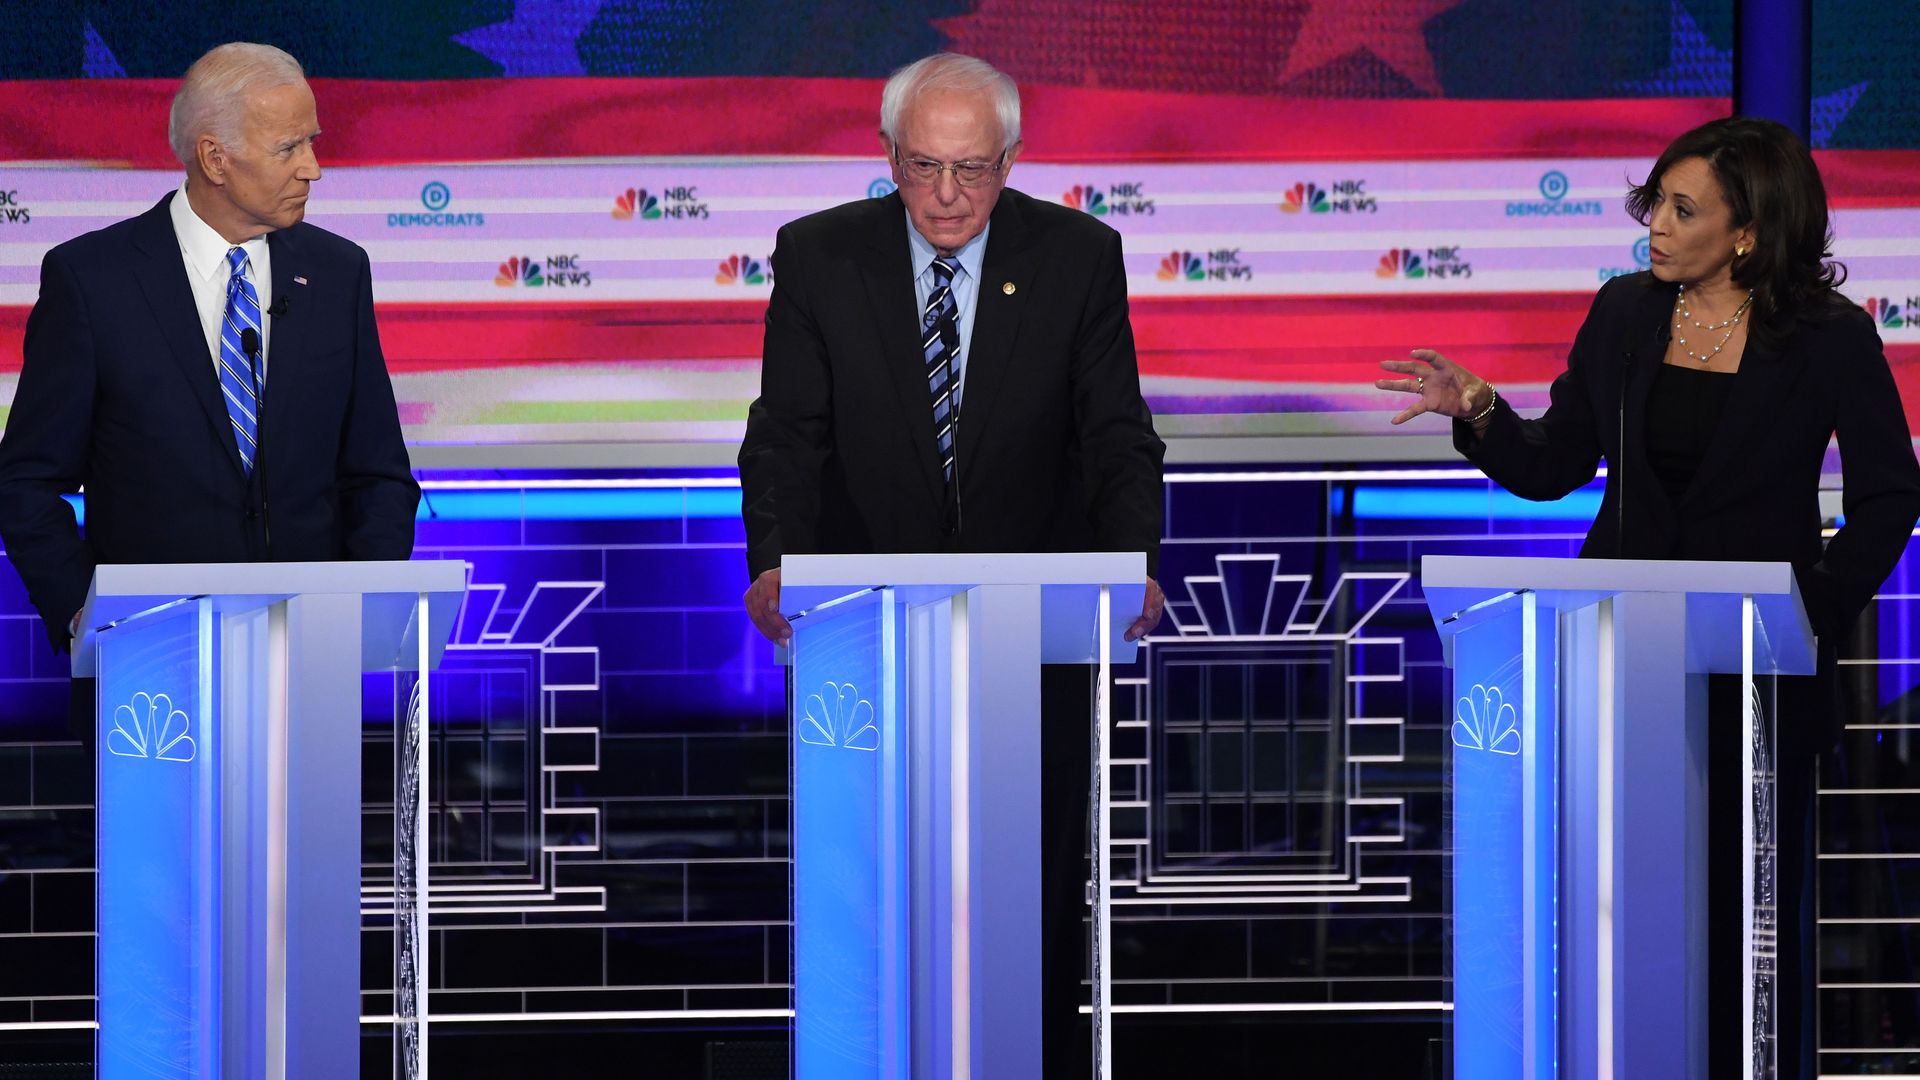 In this image, Bernie Sanders stands between Joe Biden and Kamala Harris.